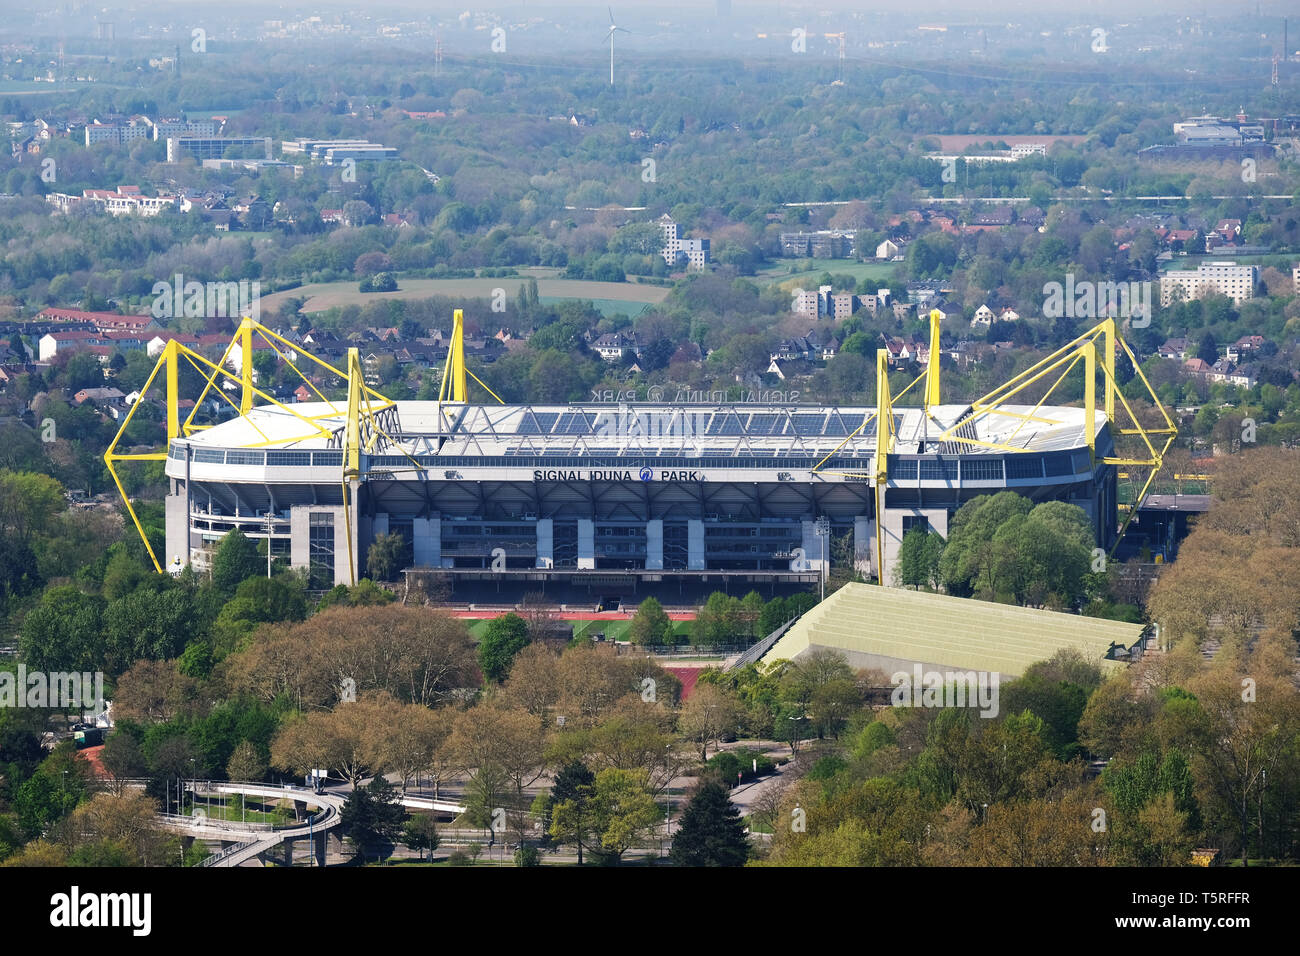 Fútbol Westfalenstadion estadio Signal Iduna Park. Hogar del club de fútbol de la Bundesliga BvB Borussia Dortmund. Dortmund, Renania del Norte-Westfalia, Alemania, Europa Foto de stock